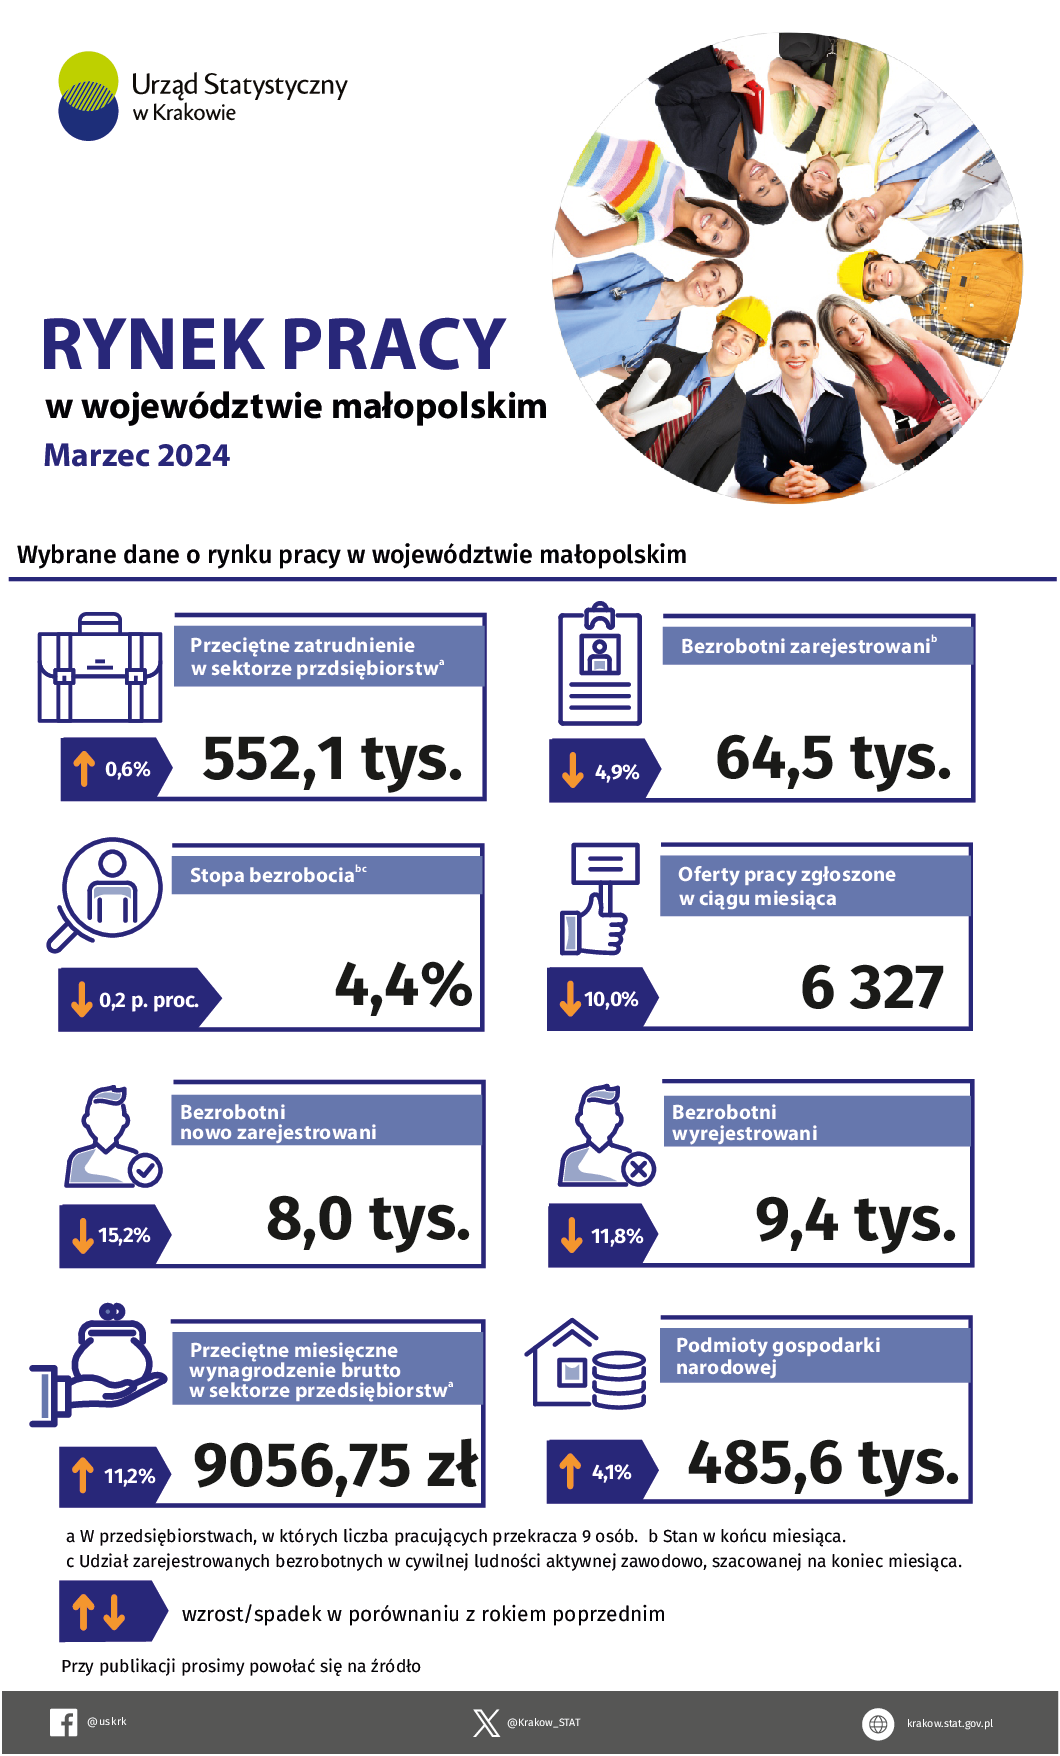 Rynek pracy w województwie małopolskim w marcu 2024 – infografika z wybranymi danymi dotyczącymi rynku pracy.